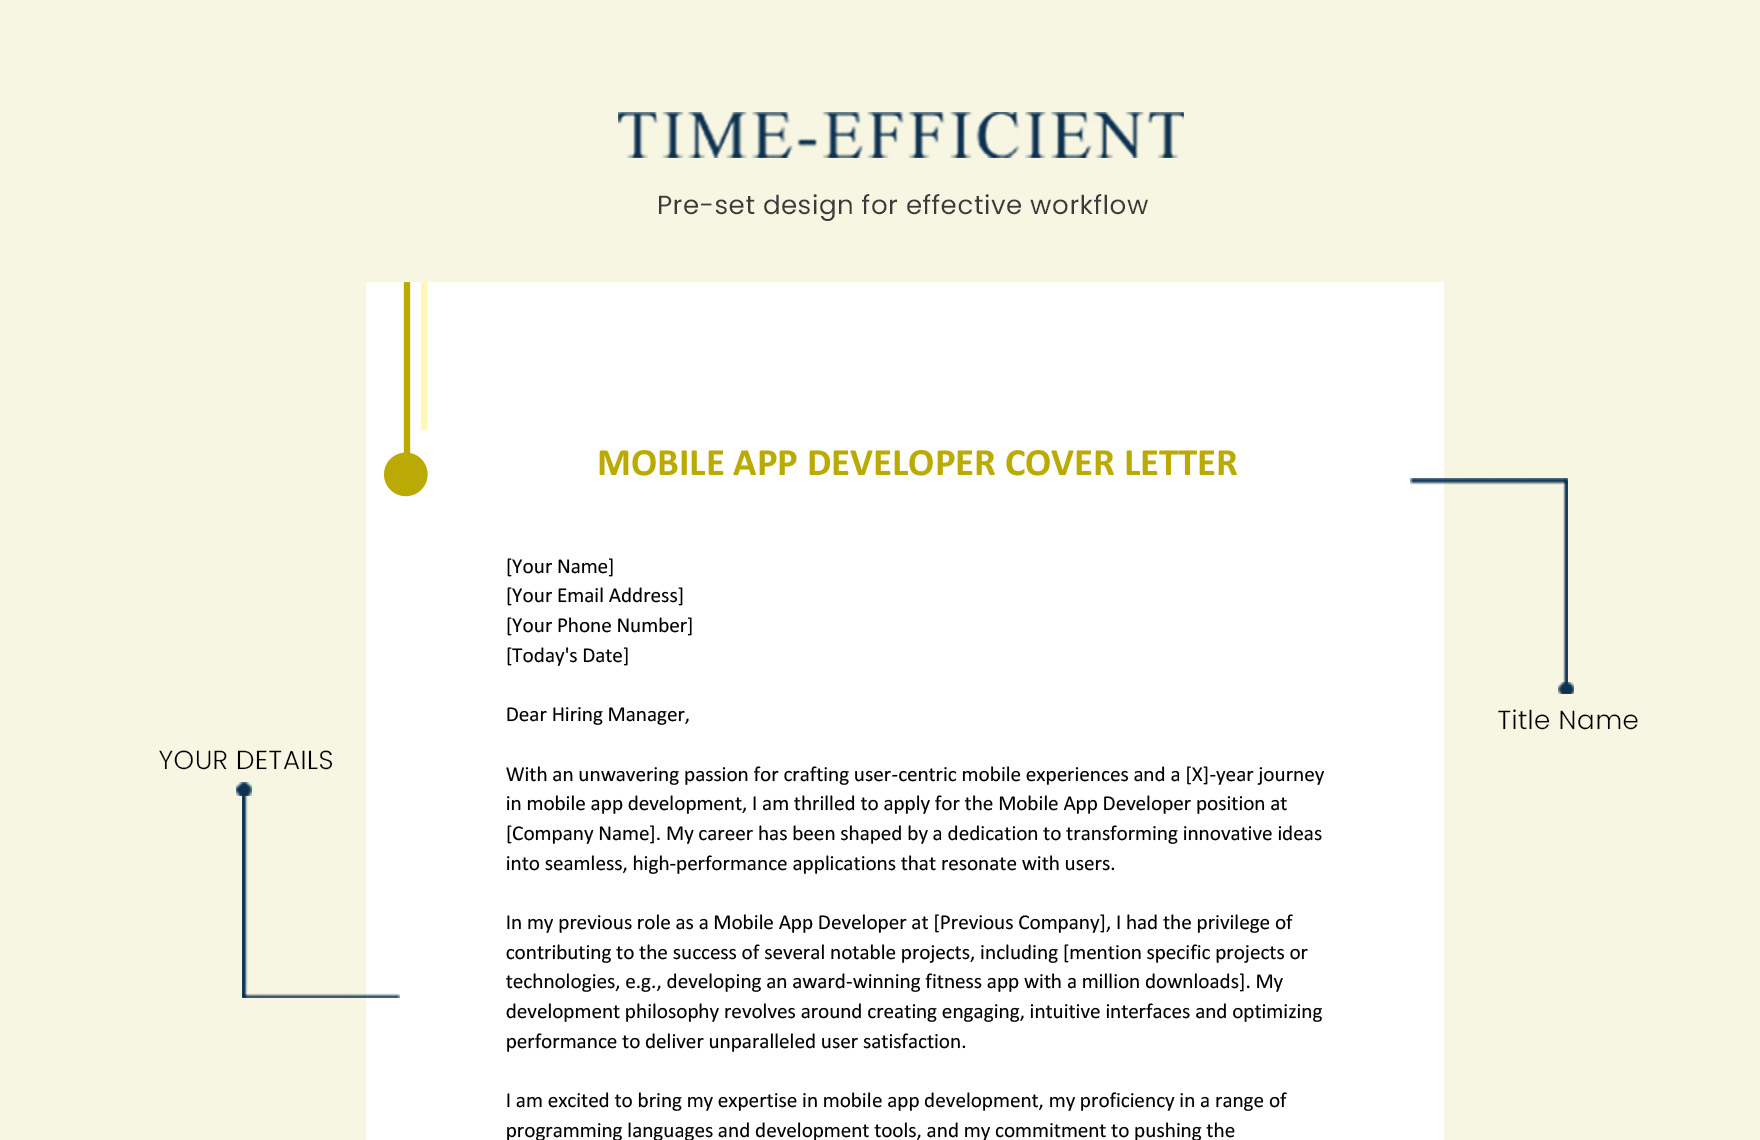 Mobile App Developer Cover Letter